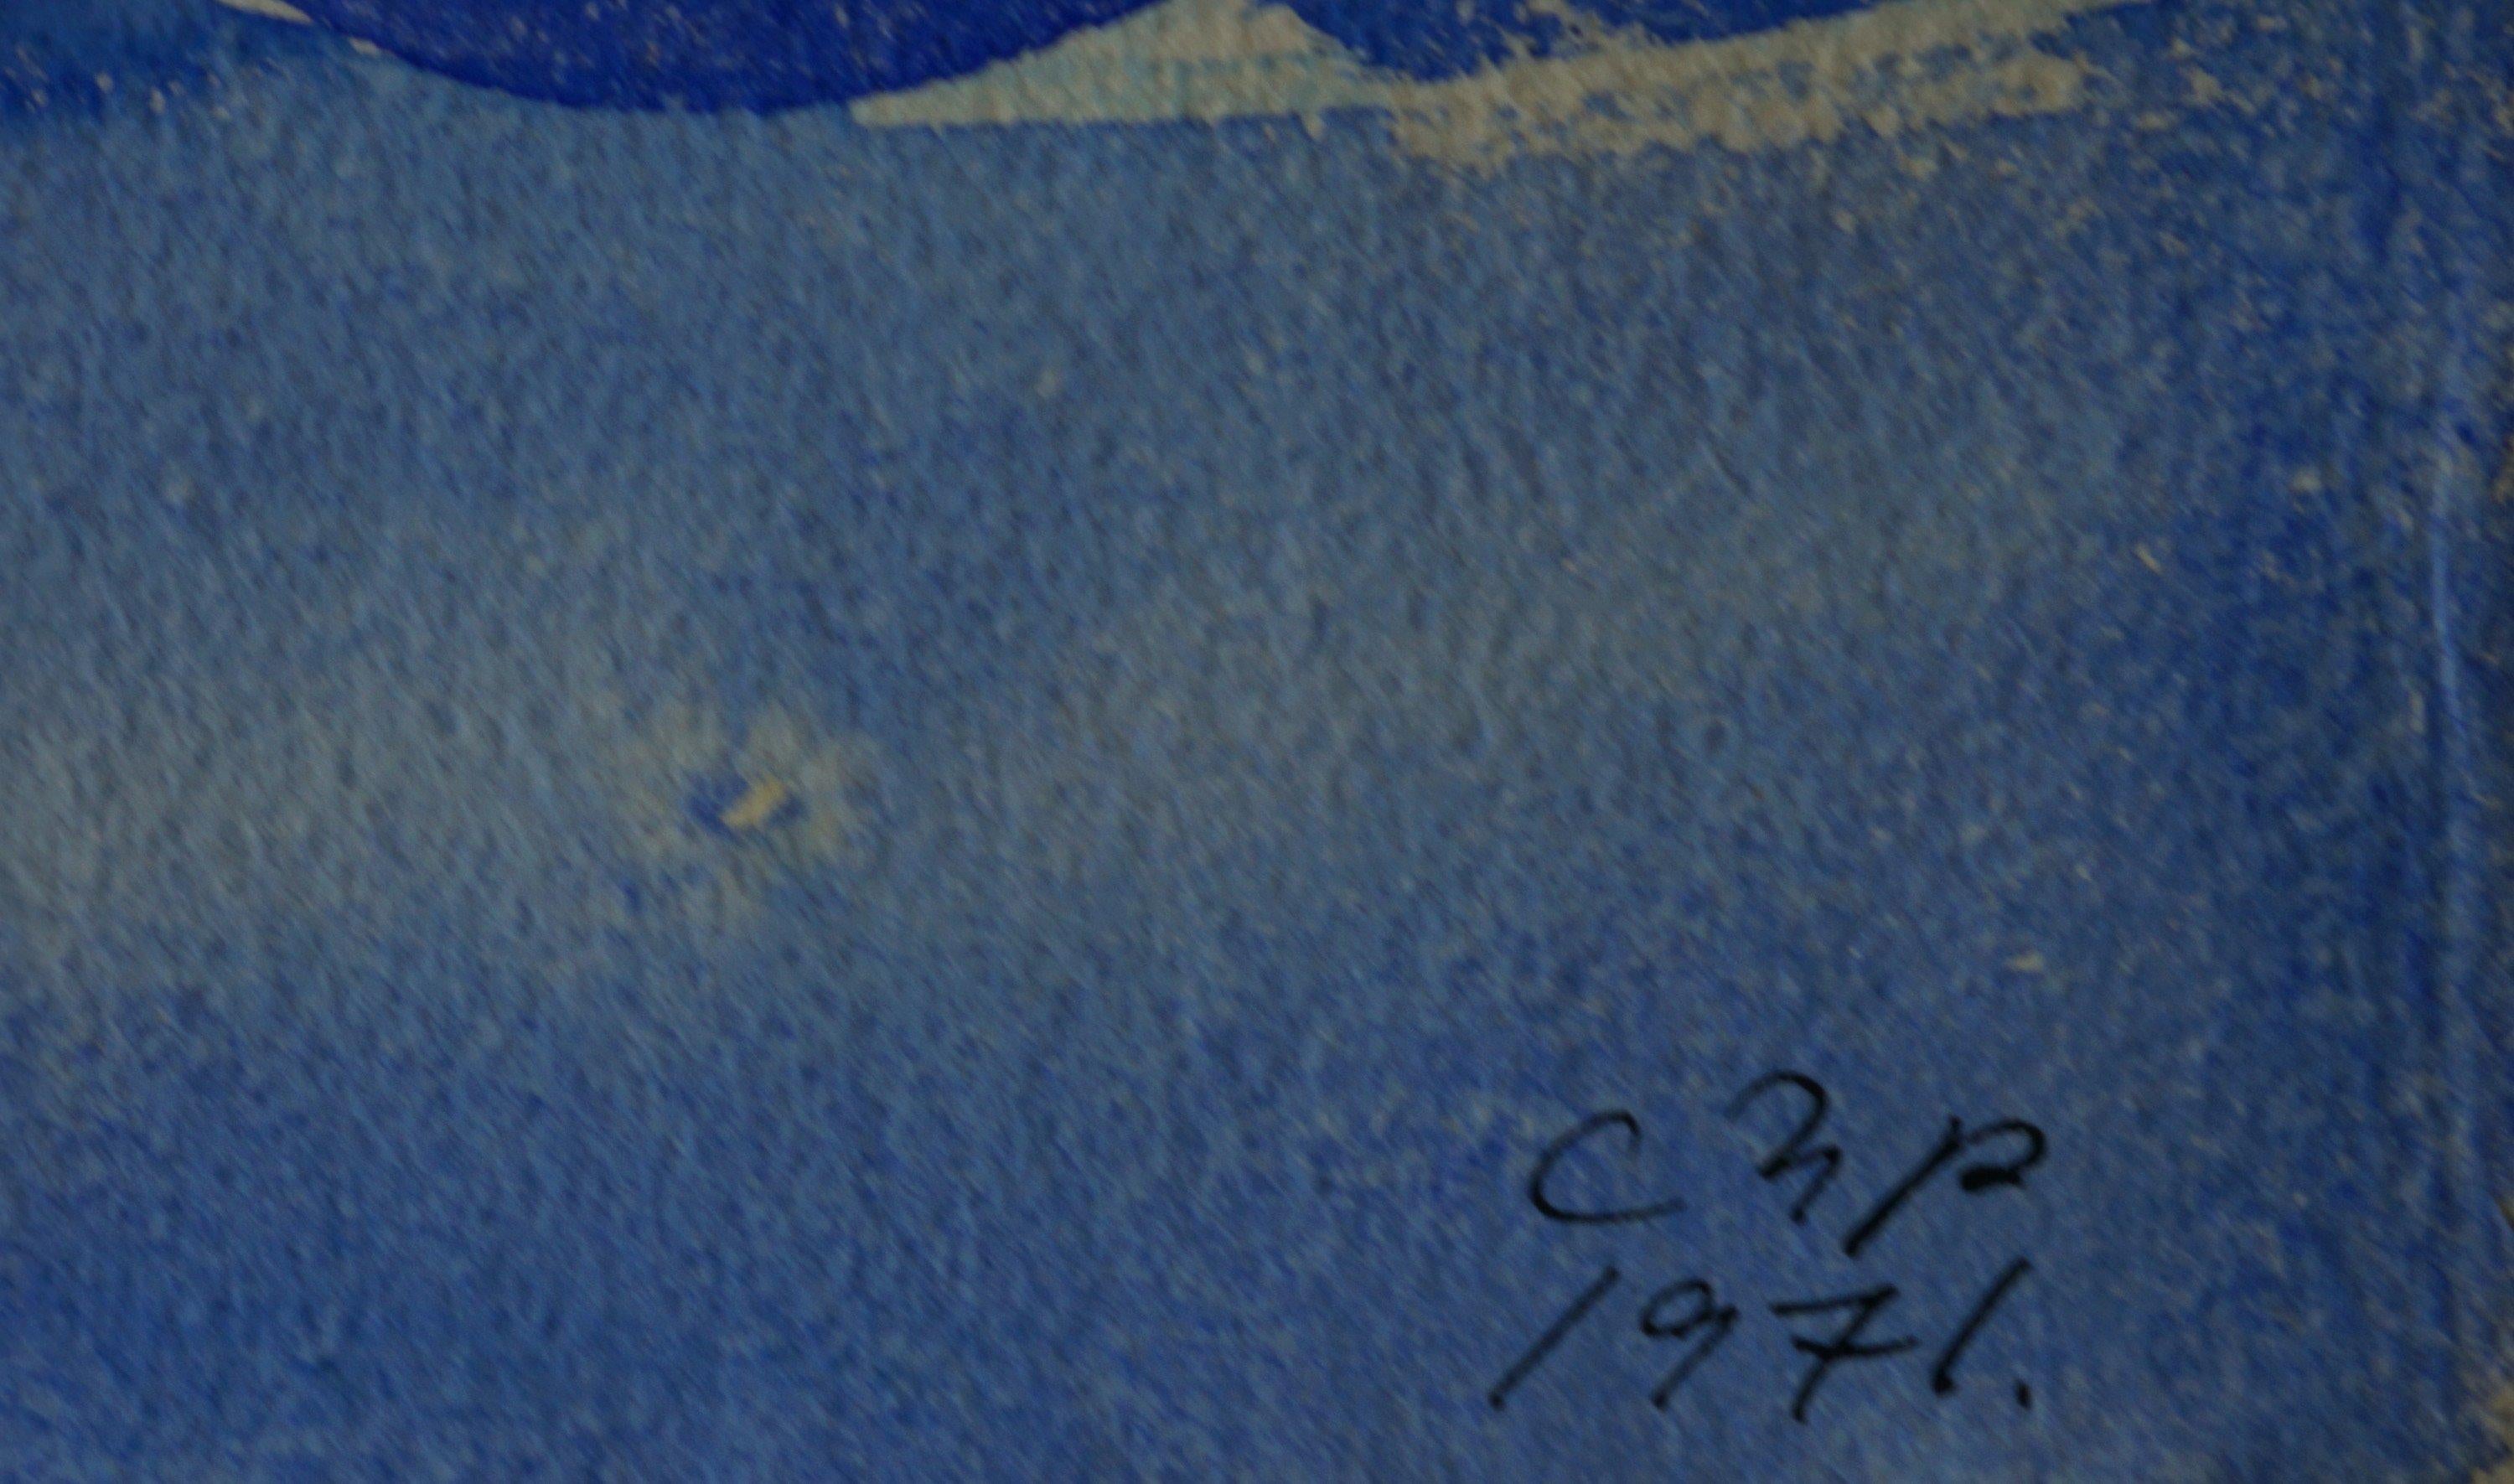 Carl-Henning Pedersen (Dänemark, 1913 - 2007) 
Die Blaue Erde II, 1971
Aquarell auf Papier
Signiert und datiert unten rechts, verso signiert, datiert und betitelt
30,5 x 21,5 Zoll

Carl-Henning Pedersen wurde 1913 in Kopenhagen geboren. Schon früh